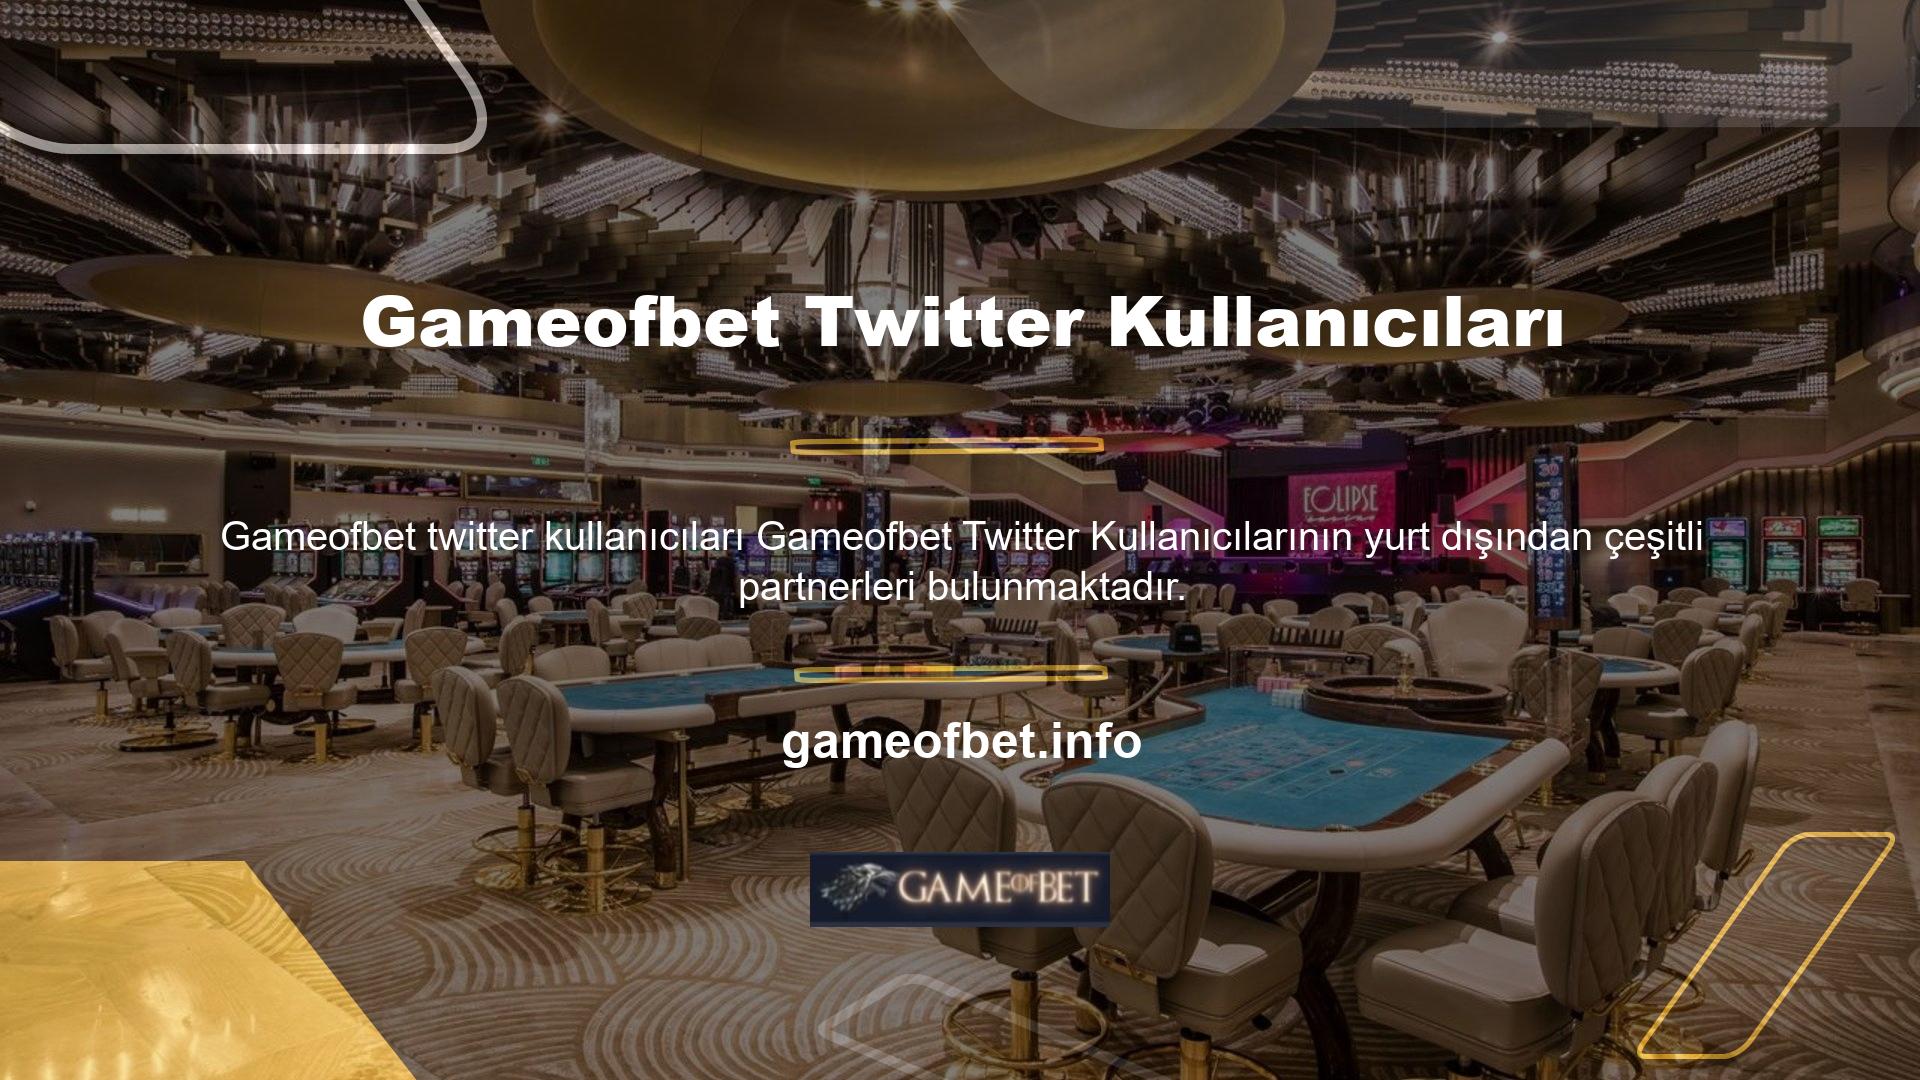 Gameofbet bahis sitesi tüm dünyada adından söz ettirmeyi başarmış en kararlı bahis sitelerinden biridir